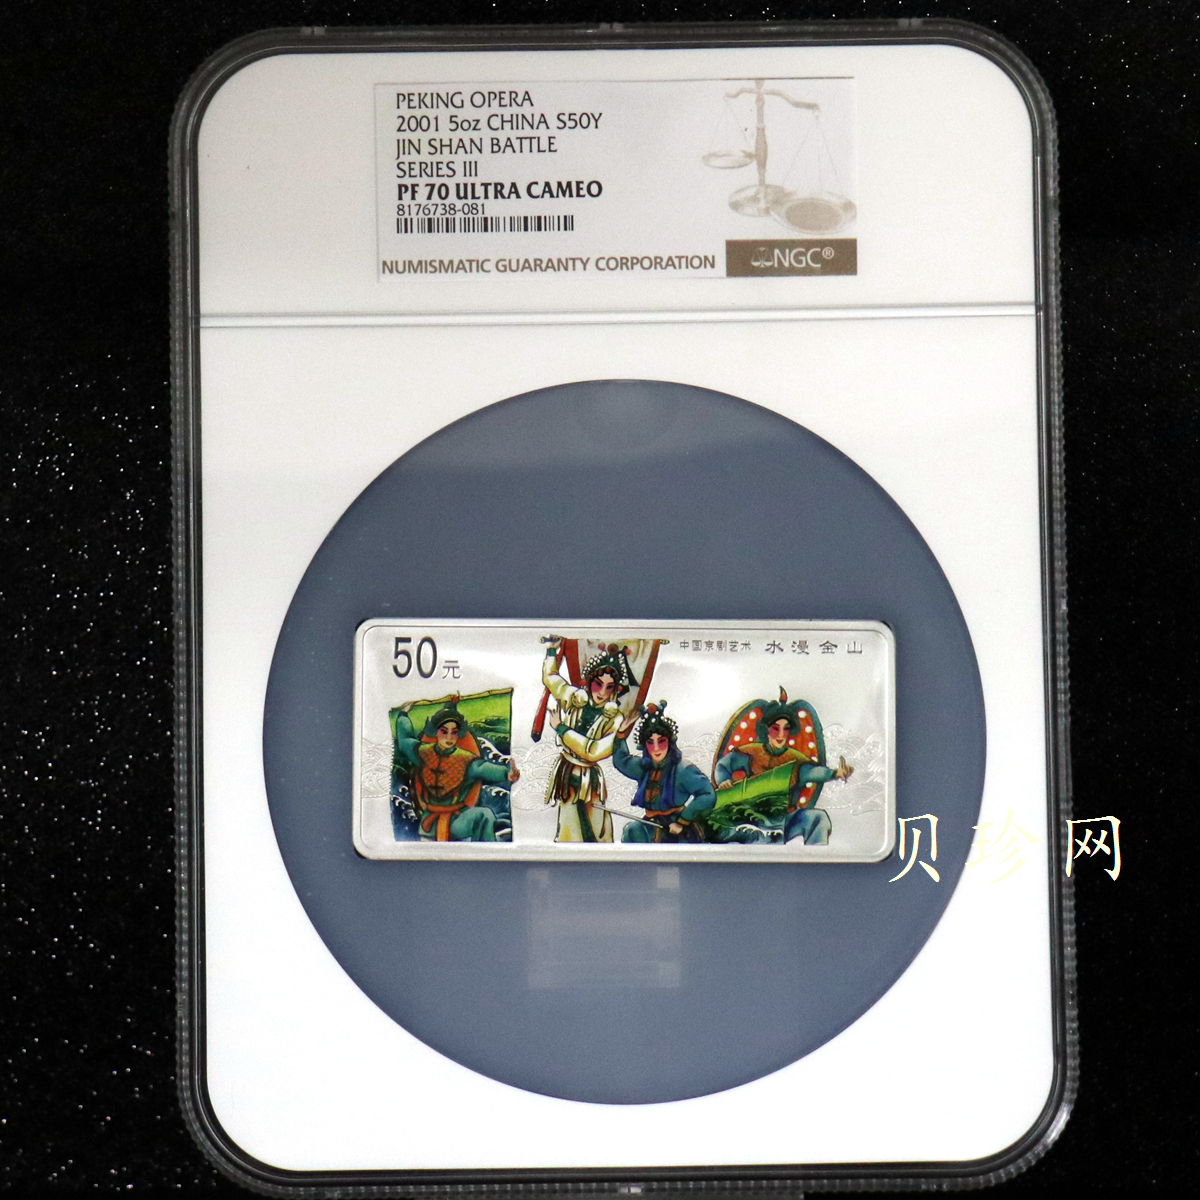 【011002】2001年中国京剧艺术彩色金银纪念币（第3组）-水漫金山5盎司彩色精制银币